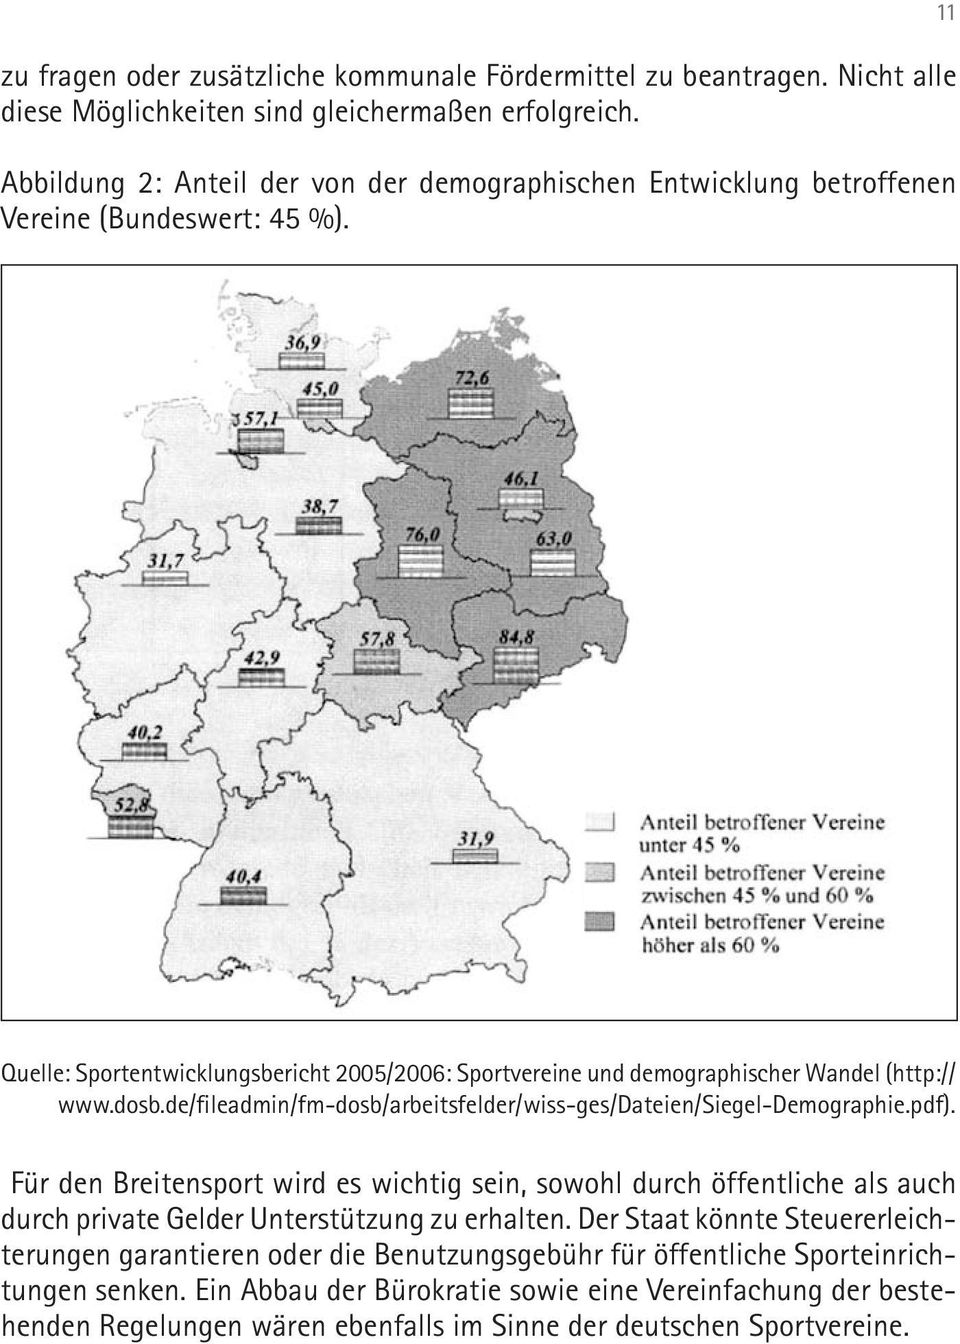 11 Quelle: Sportentwicklungsbericht 2005/2006: Sportvereine und demographischer Wandel (http:// www.dosb.de/fileadmin/fm-dosb/arbeitsfelder/wiss-ges/dateien/siegel-demographie.pdf).